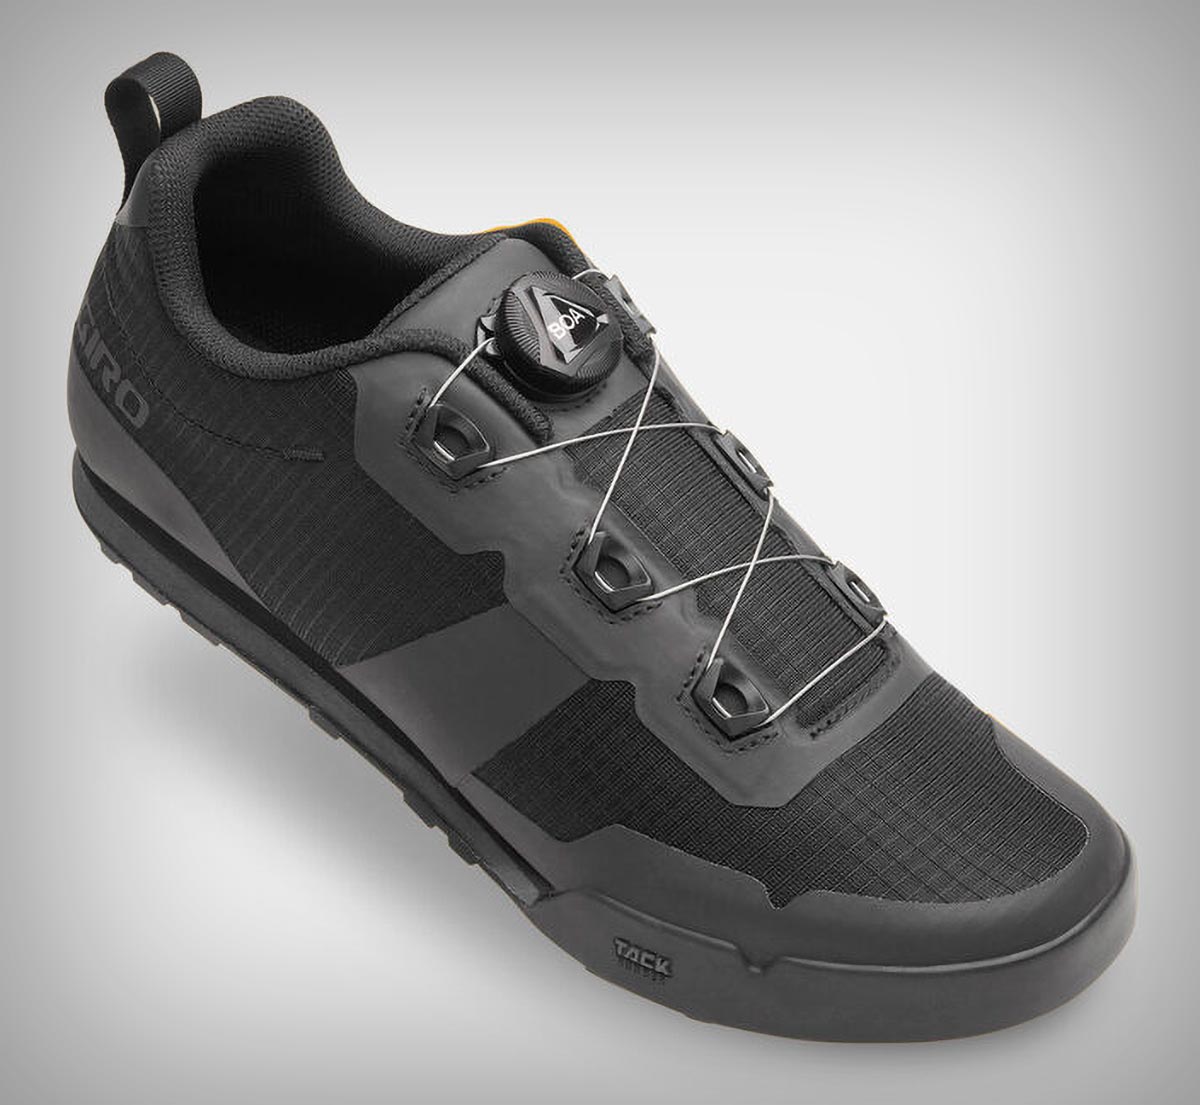 Giro Tracker, unas cómodas zapatillas con cierre BOA y horma optimizada para pedales planos